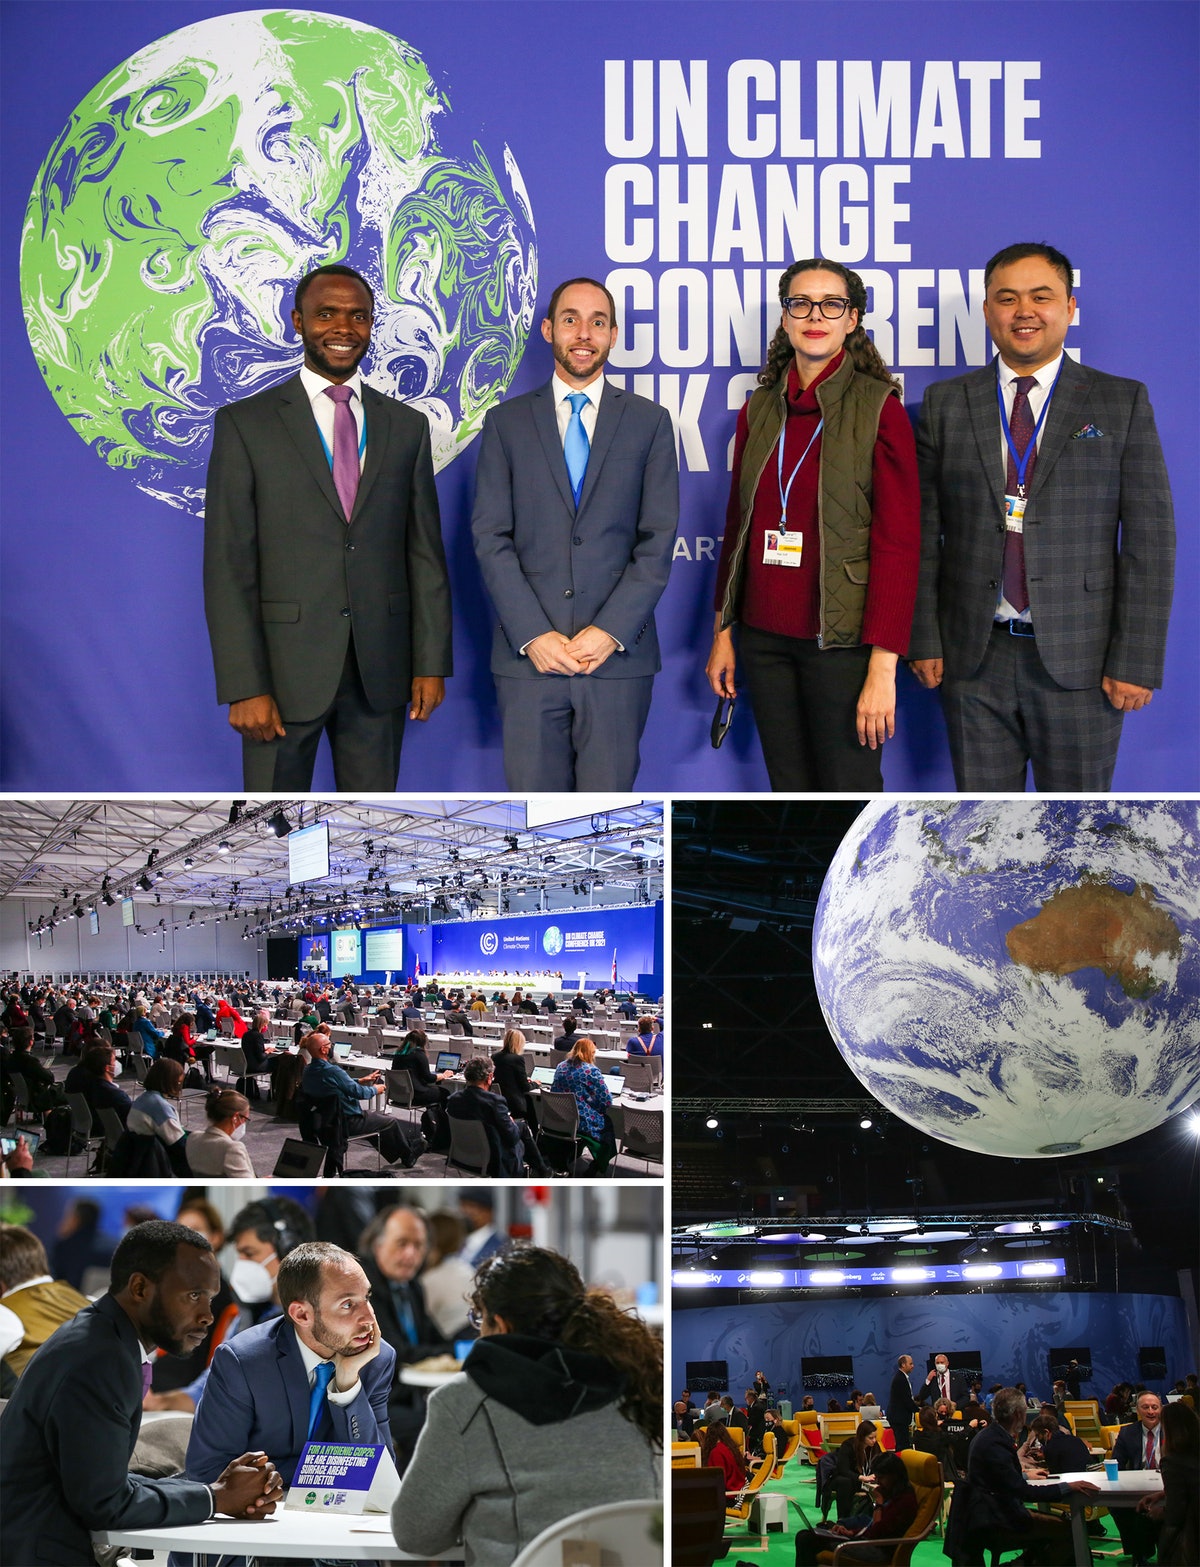 Des représentants de la communauté internationale bahá’íe ont participé aux discussions du sommet sur le climat COP26, explorant les dimensions morales de l’action climatique.